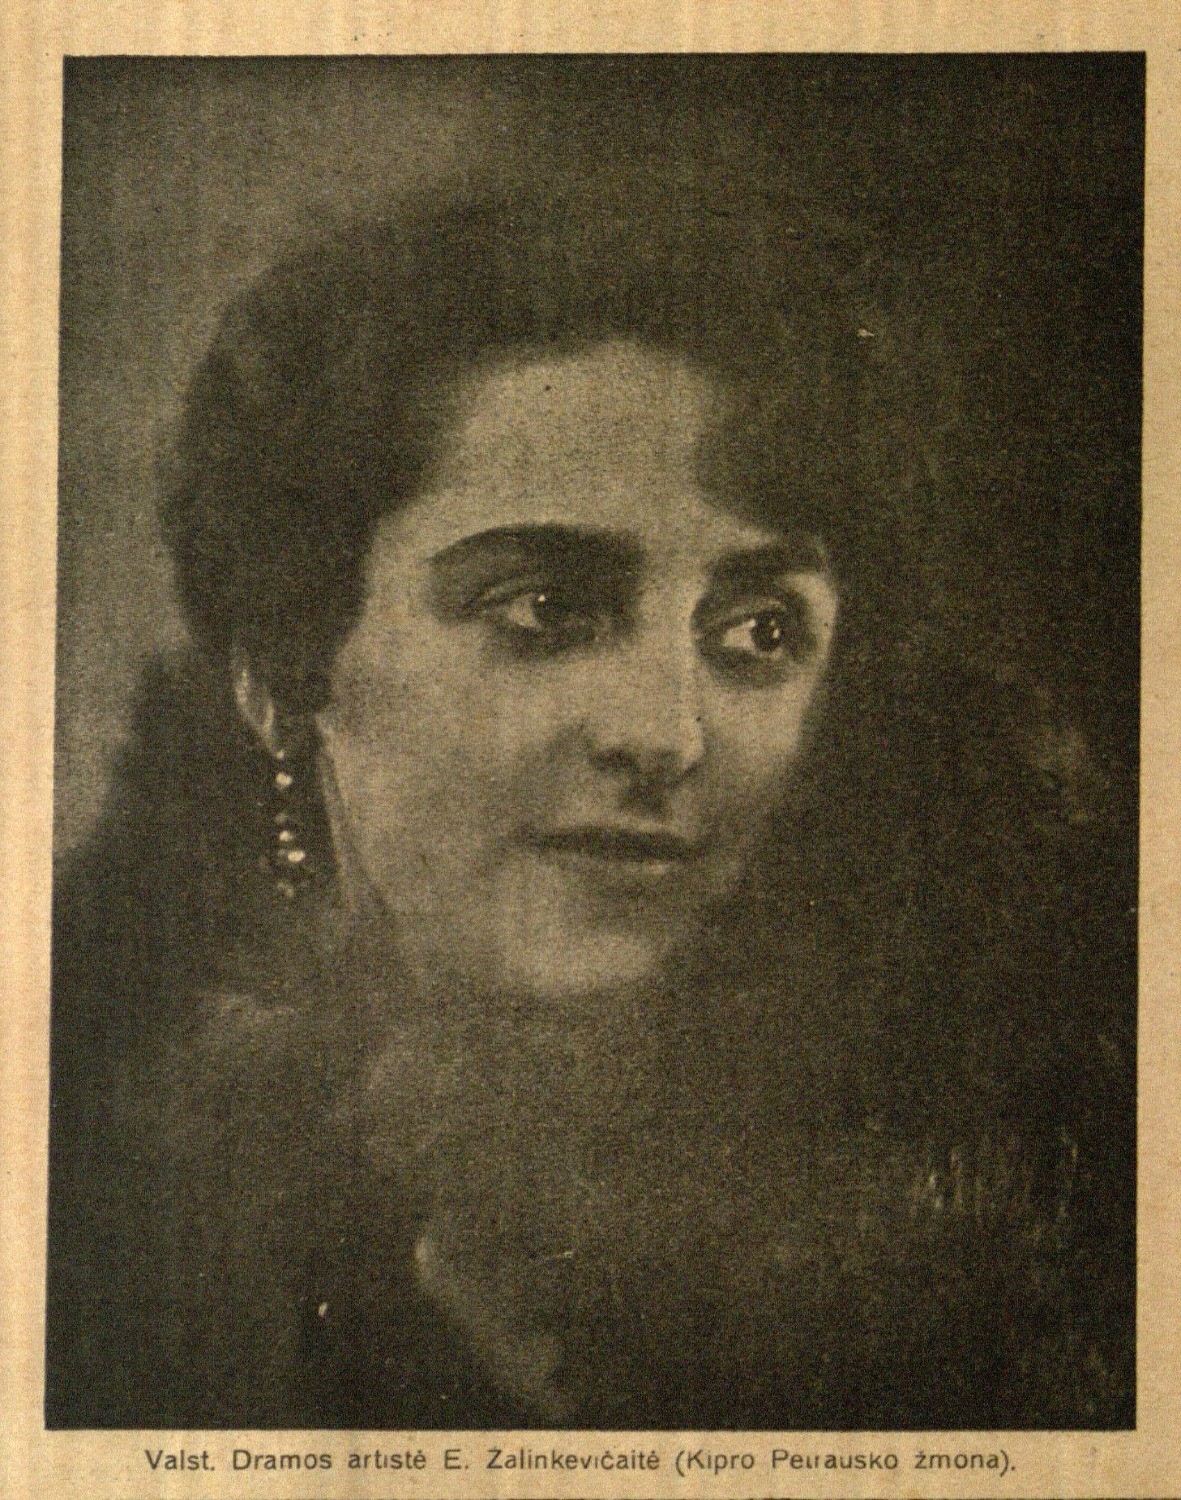 Valst. Dramos artistė E. Žalinkevičaitė (Kipro Petrausko žmona) // Naujas žodis. – 1929, Nr. 3, p. 8.